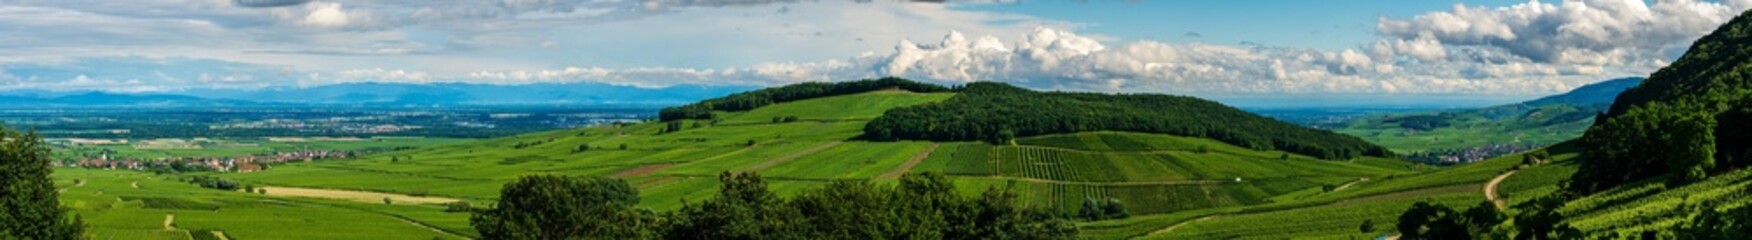 Le Mont de Sigolsheim, au cœur du vignoble alsacien, CEA, Grand Est, Alsace, France